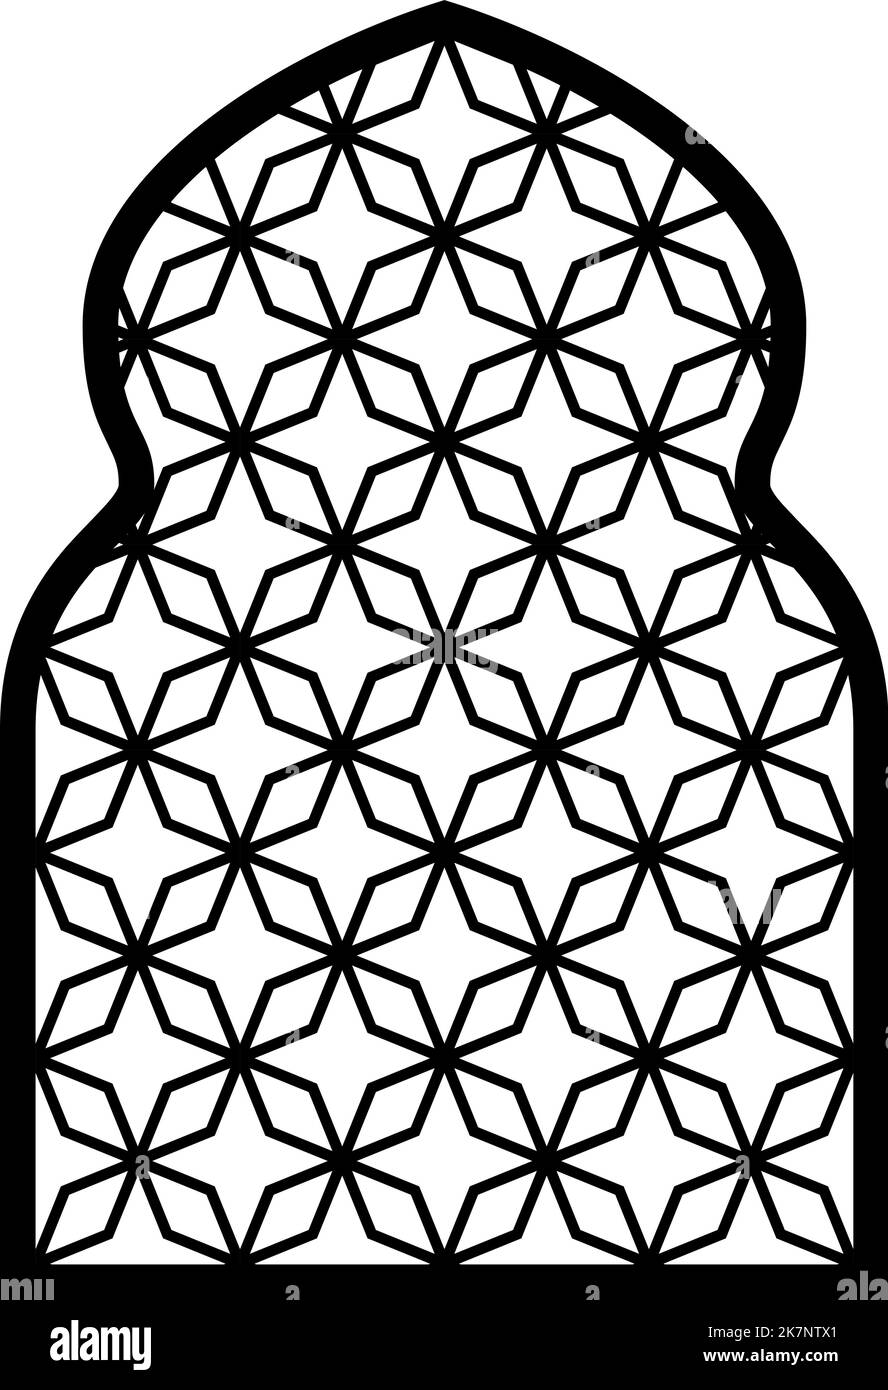 Schema della linea mediorientale a forma di finestra araba Illustrazione Vettoriale